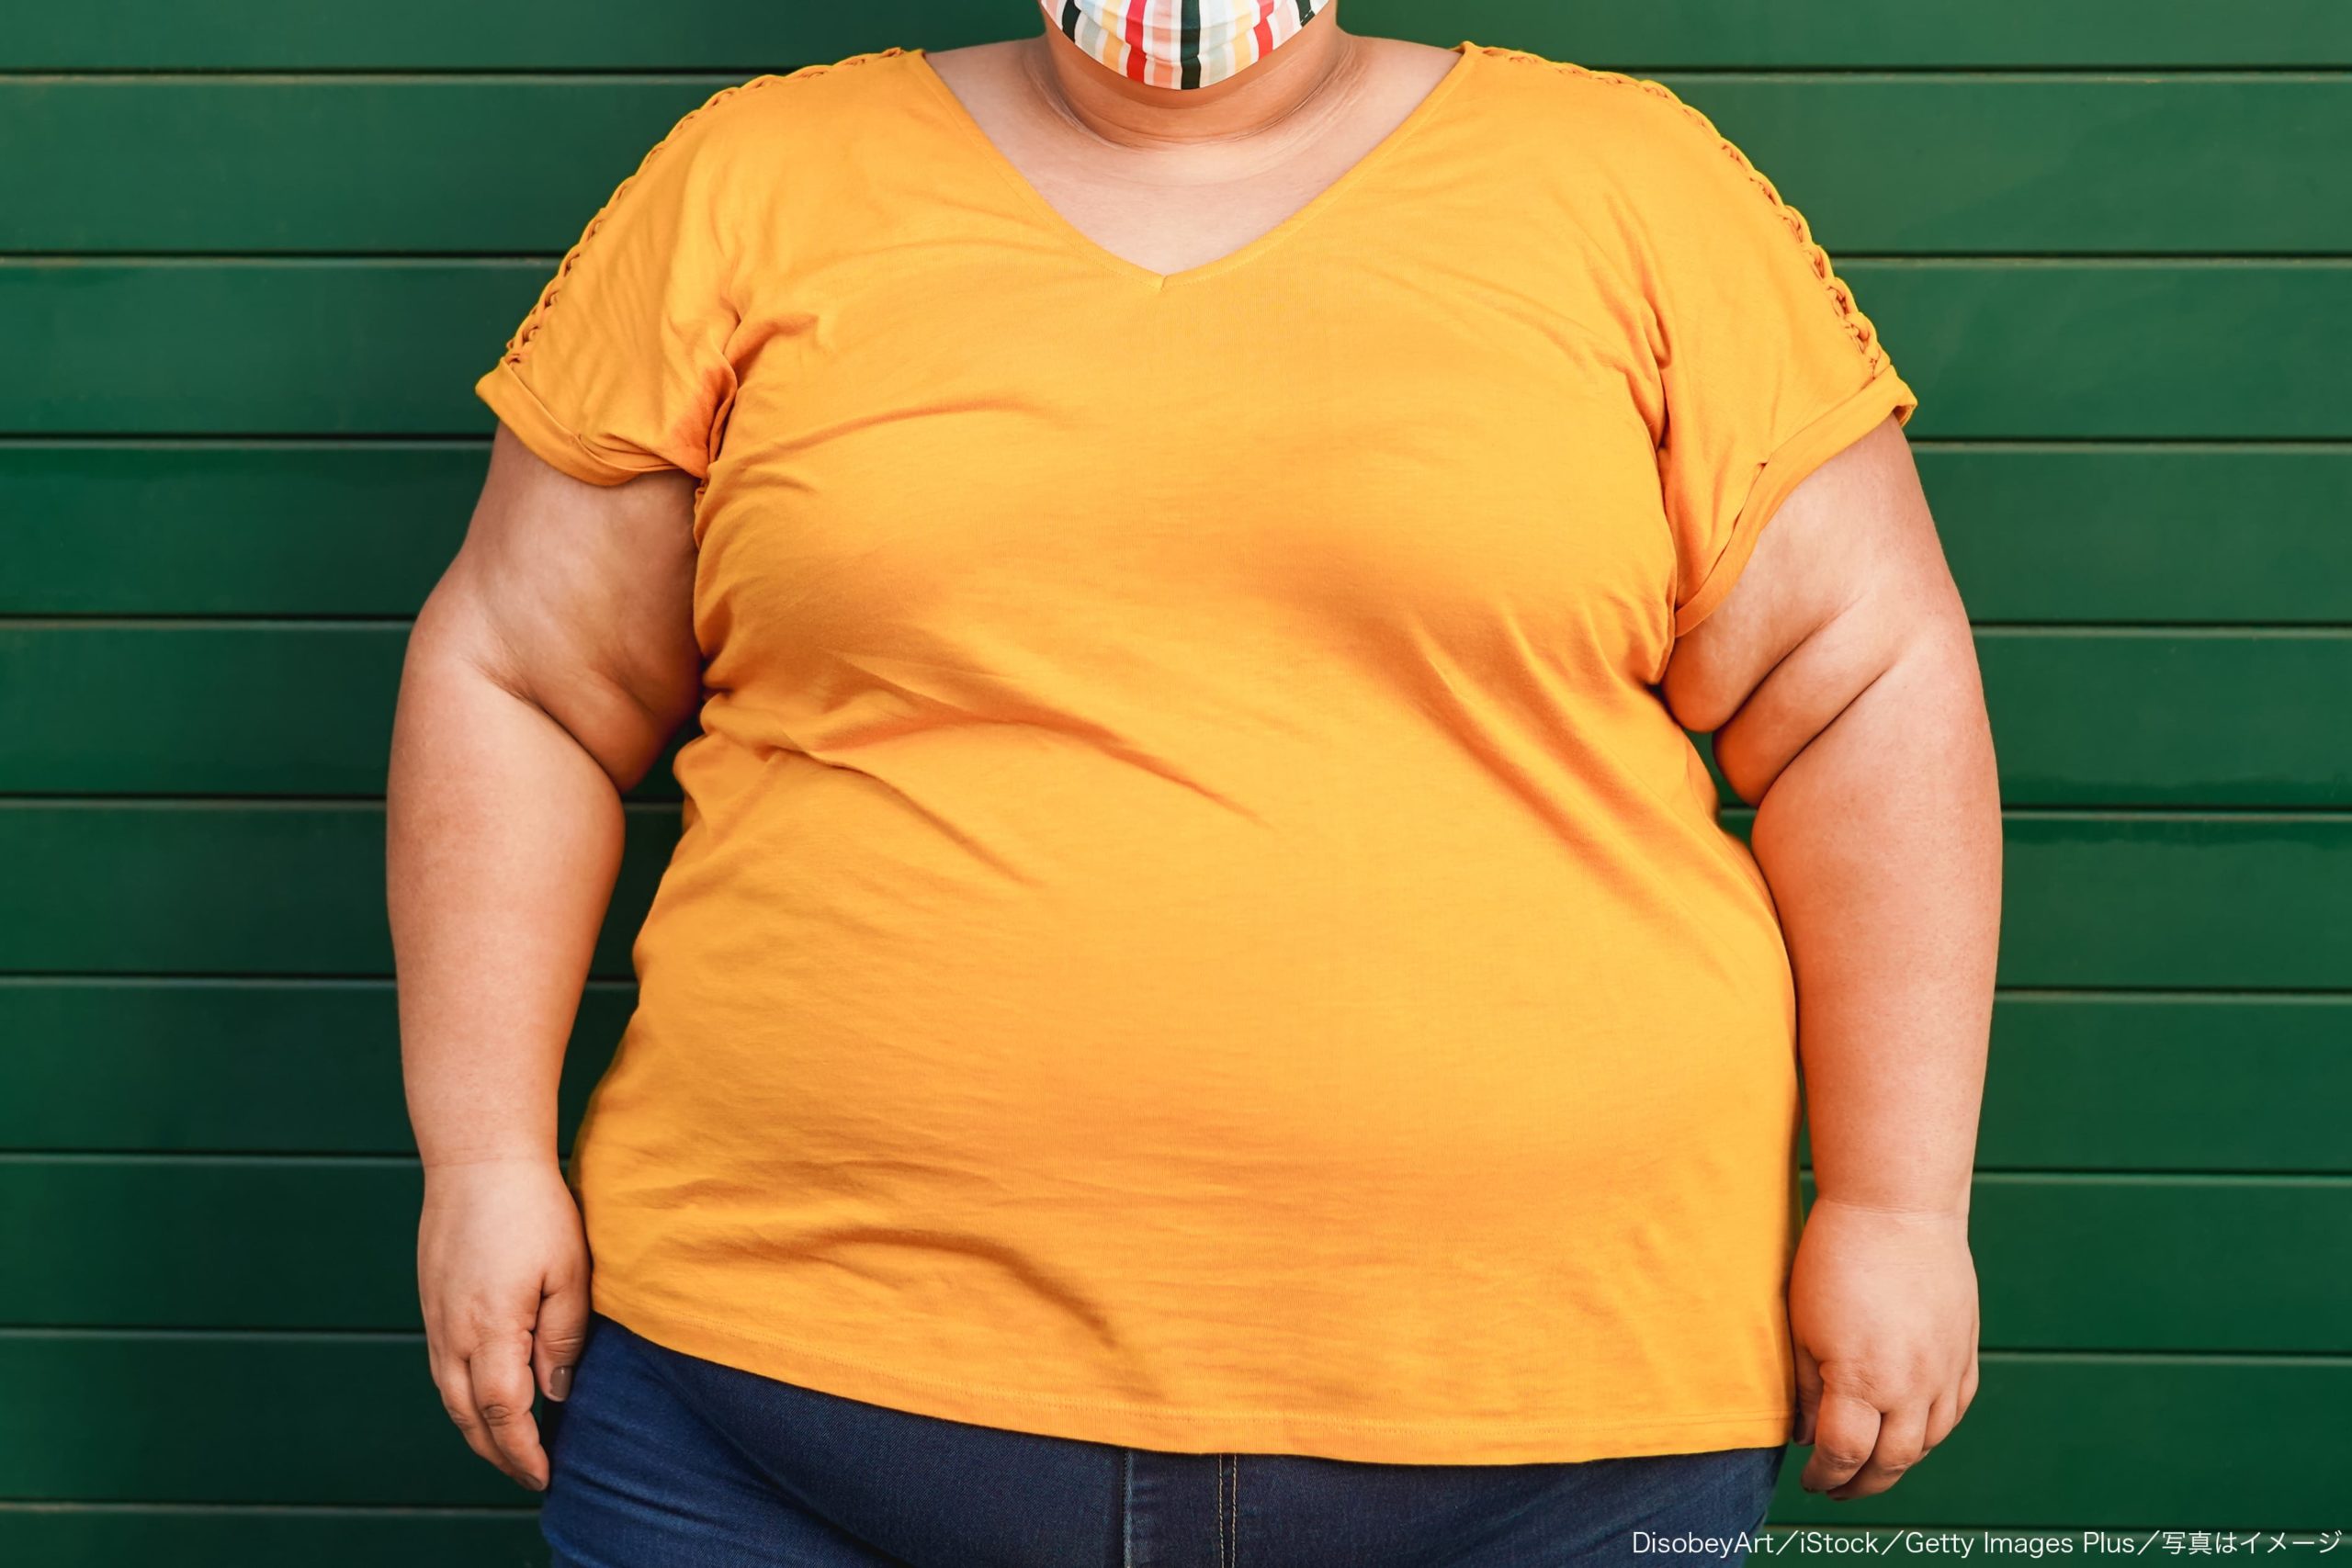 室内すら歩けなかった254kgの超肥満女性 水泳にハマり1年で95kg減量に成功 Sirabee